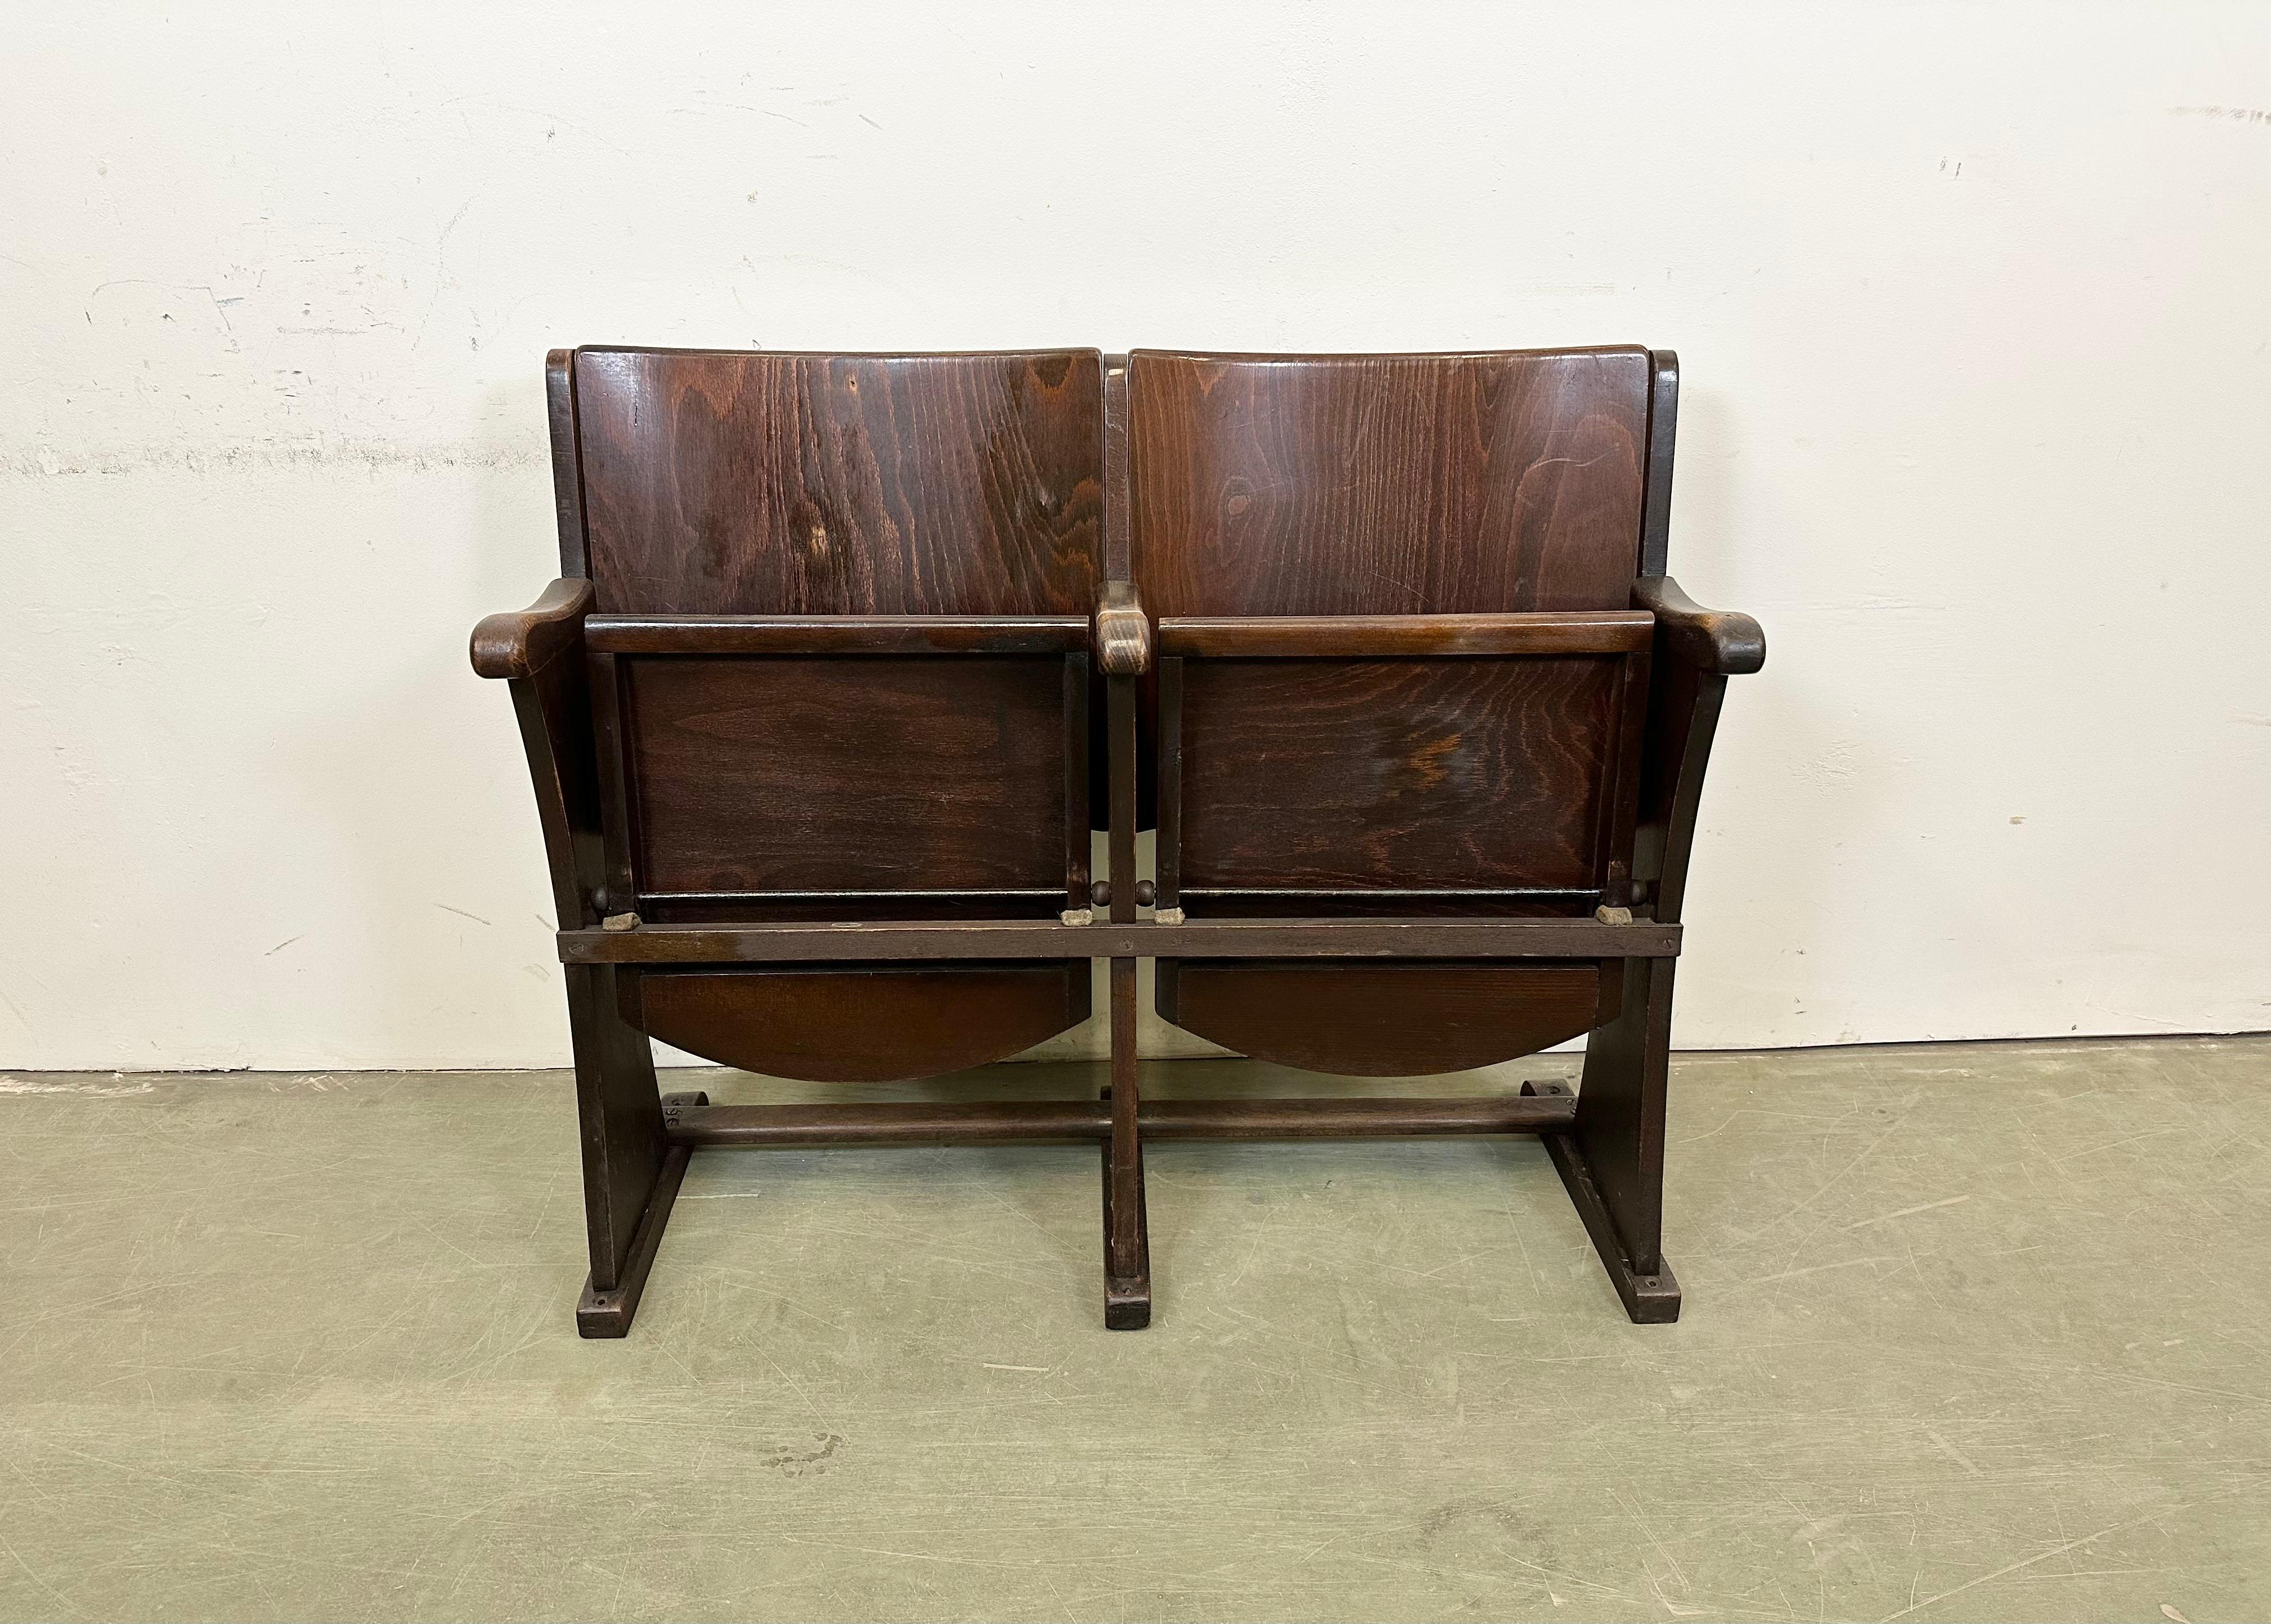 Diese zweisitzige Kinobank wurde von Thonet in der ehemaligen Tschechoslowakei in den 1930er bis 1950er Jahren hergestellt. Die Stühle sind stabil und können überall aufgestellt werden. Es ist komplett aus Holz gefertigt (teilweise Massivholz,